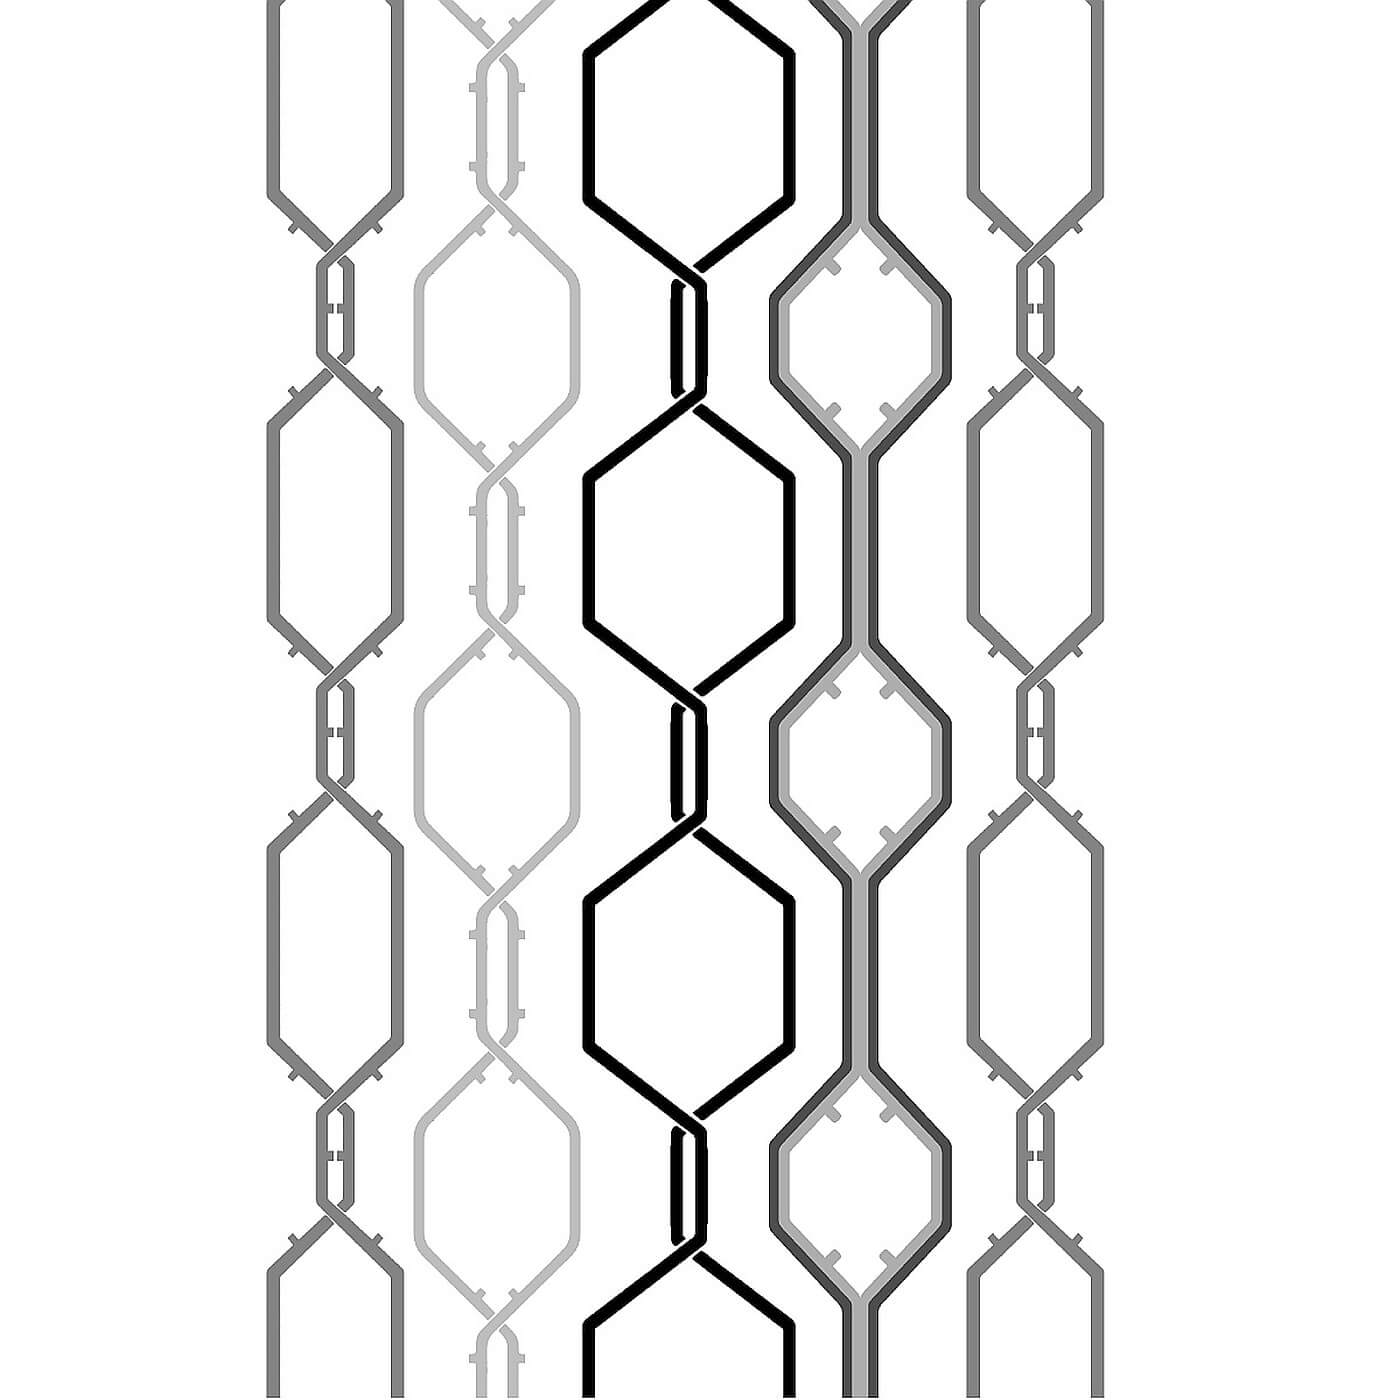 Nowoczesna zasłona LINJA. Wzór białej gotowej zasłony w czarno szare przeplatające się linie tworzące sześciokąty w pionowym układzie. Skandynawski design